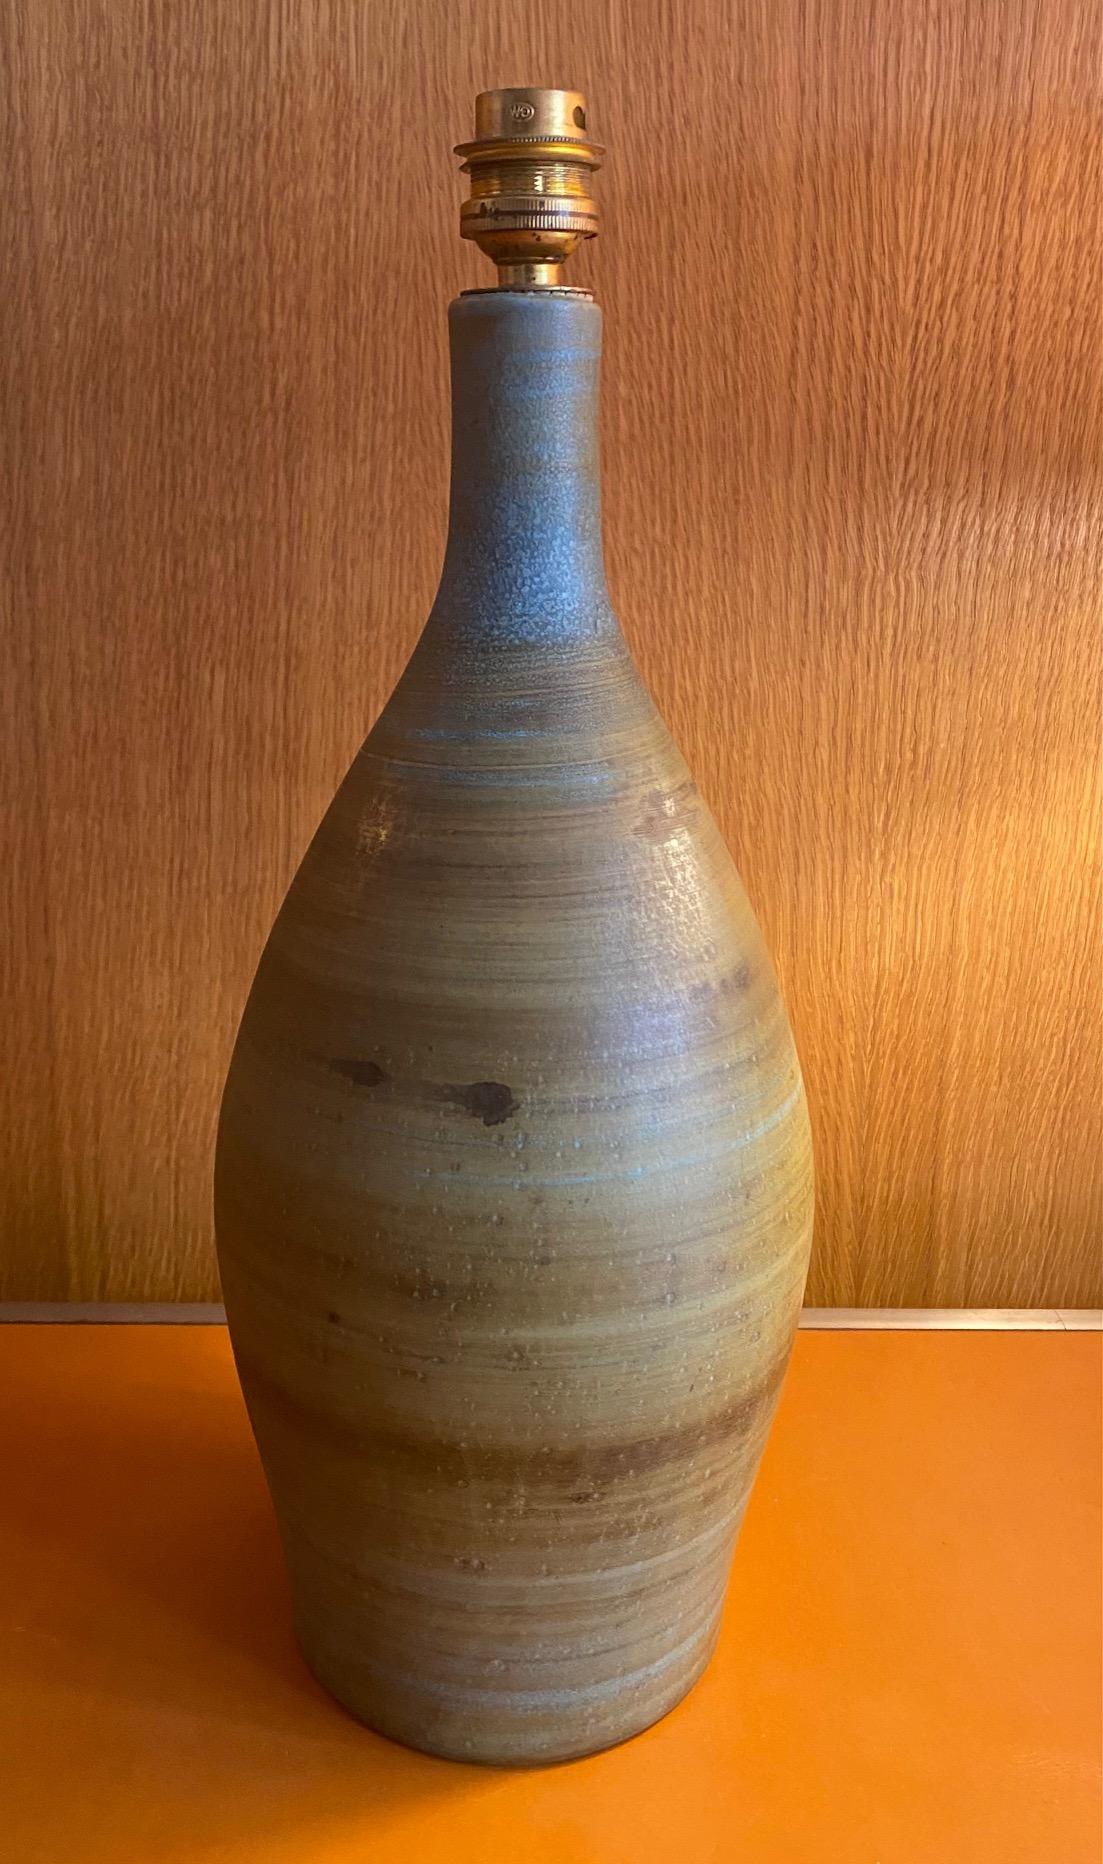 Lampe de table en céramique de Jacques Serre, France, 1970 
Jacques Serre a été membre de l'atelier des 2 Potiers, actif entre 1954 et 1970 jusqu'à son divorce avec Michèle Serre.